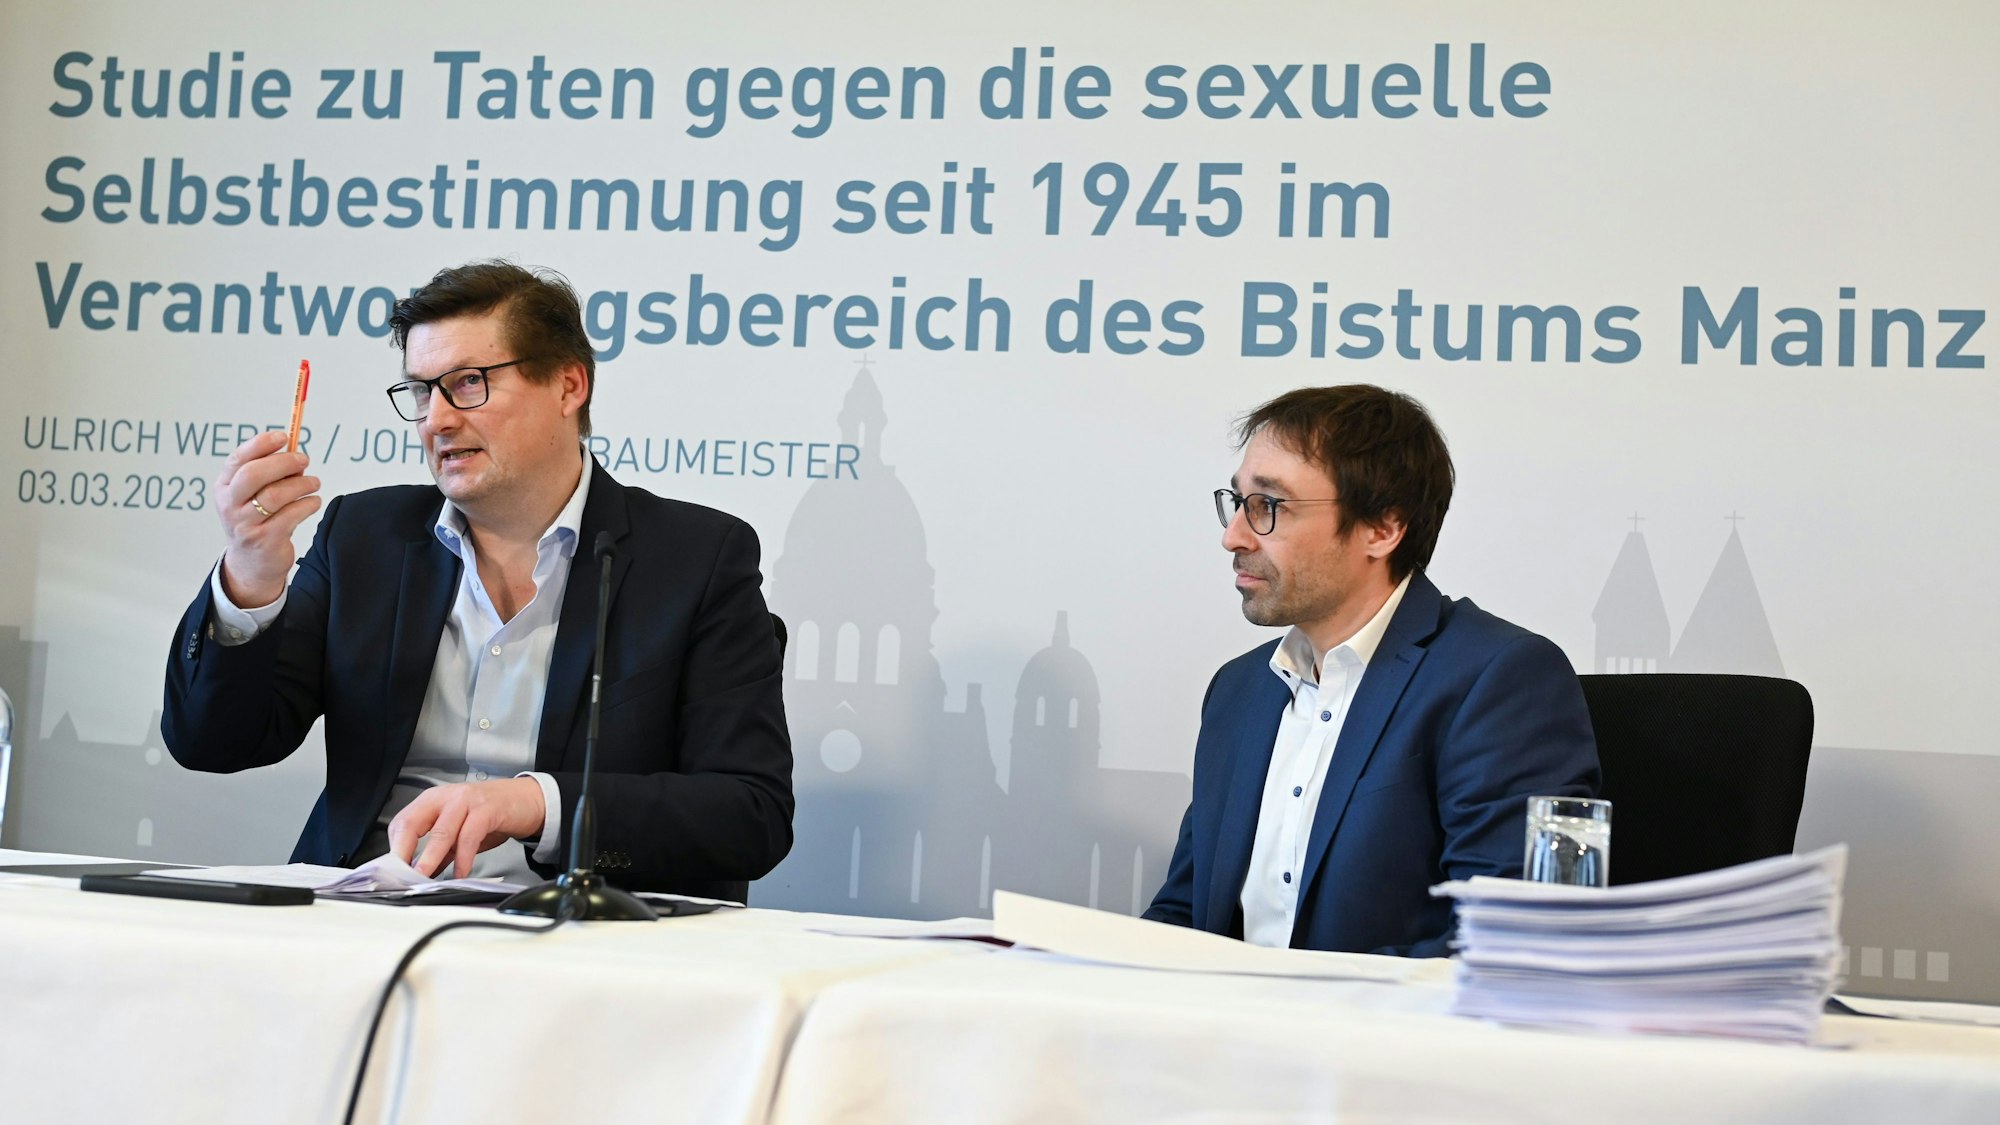 Die Rechtsanwälte Ulrich Weber (l) und Johannes Baumeister haben vor Beginn einer Pressekonferenz zu den Ergebnissen einer Studie zu sexuellem Missbrauch im Bistum Mainz Platz genommen.